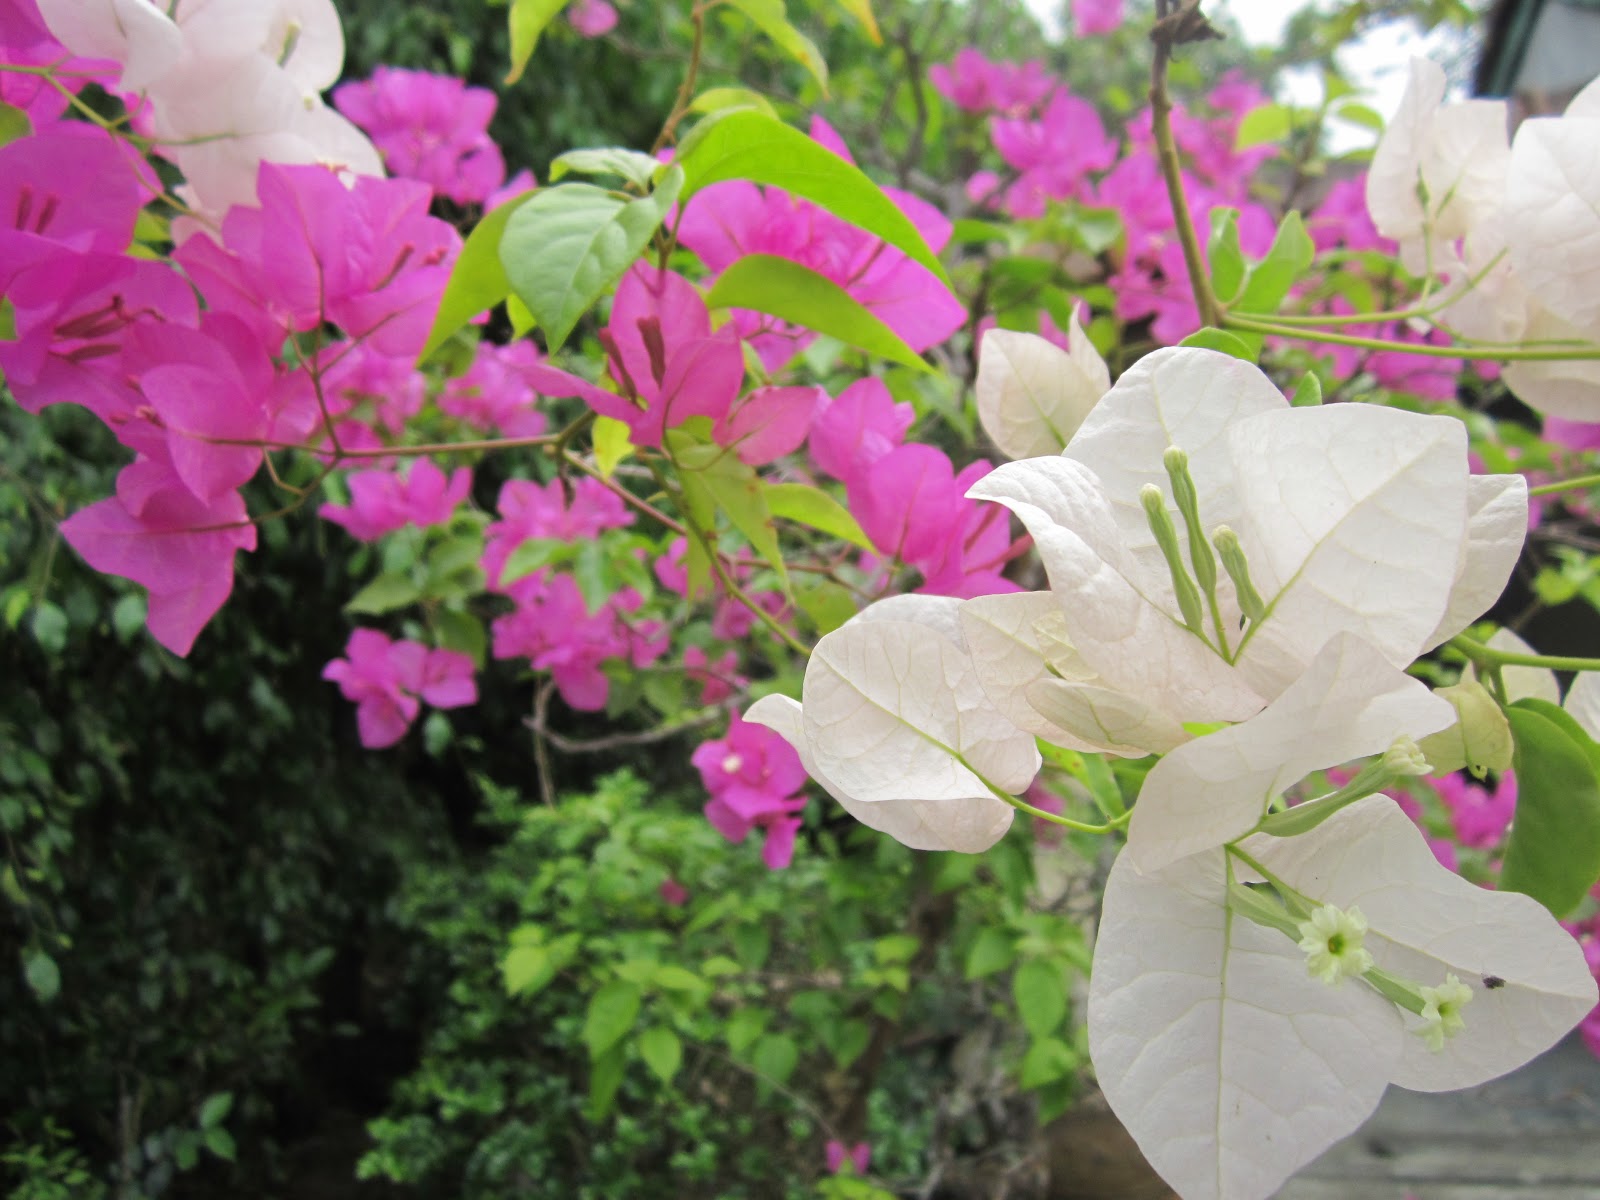 Những chiếc lá xanh mượt mà và hoa nhỏ tinh tế của thuốc cây hoa Giấy sẽ khiến bạn cảm thấy thư thái và gần gũi với thiên nhiên. Hãy xem hình ảnh tuyệt đẹp về cây hoa Giấy này ngay để thấy sự tươi mới và sức sống mà chúng mang lại.